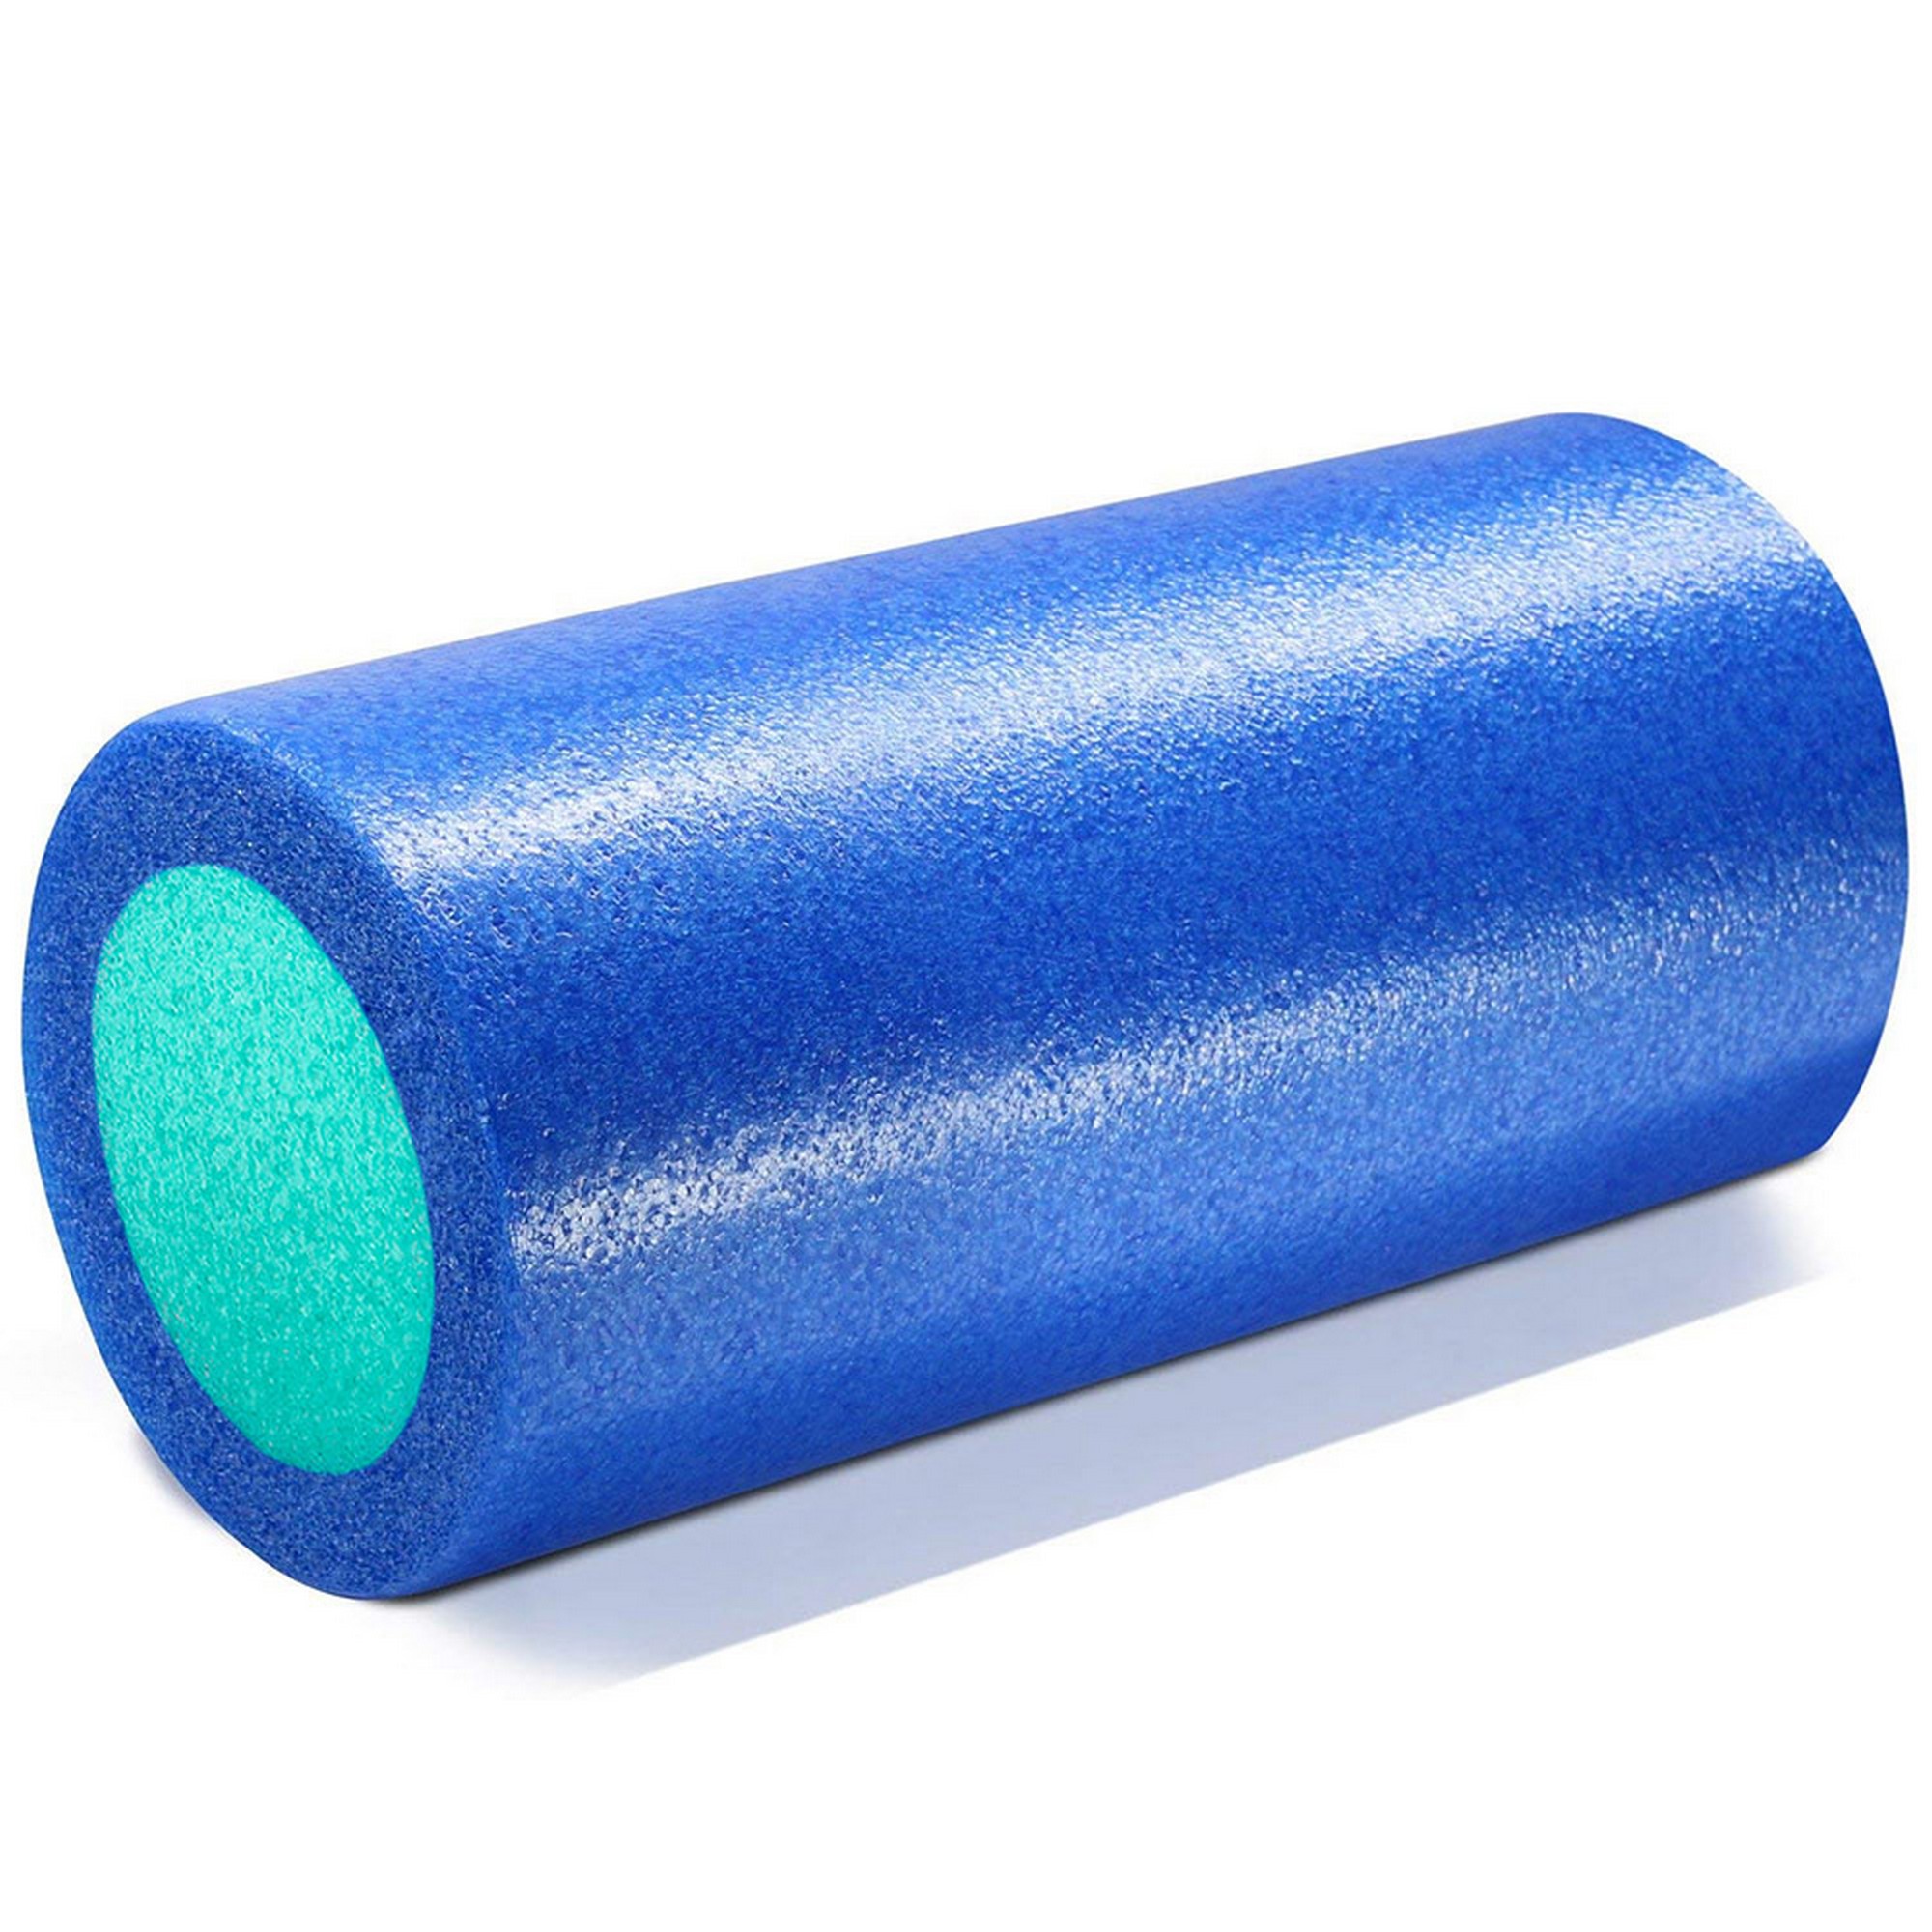 Ролик для йоги полнотелый 2-х цветный, 60х15x15см Sportex PEF60-B синий\зеленый 2000_2000